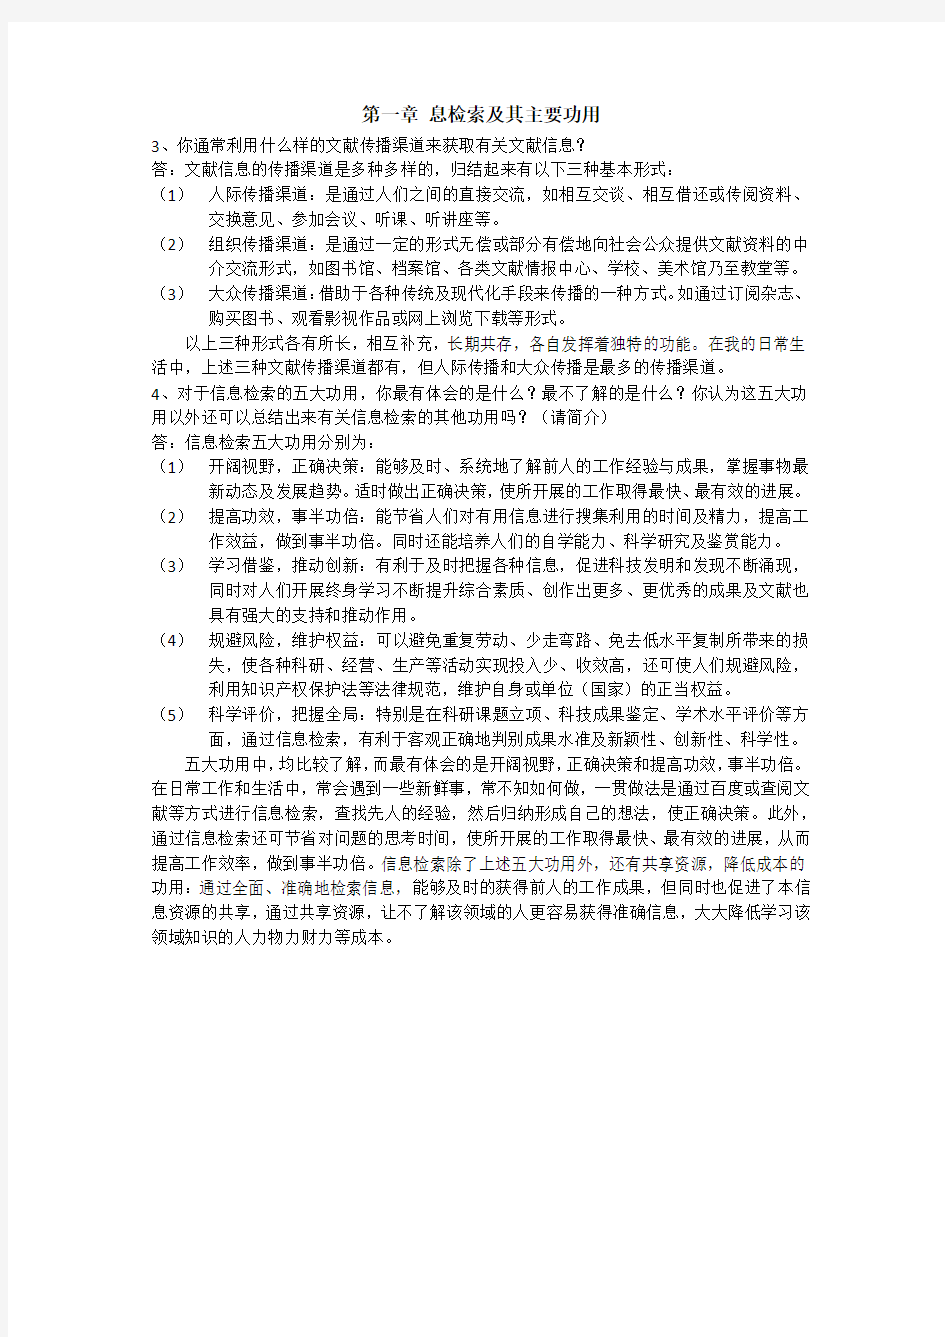 中国科学技术大学--信息检索作业答案(电子版)